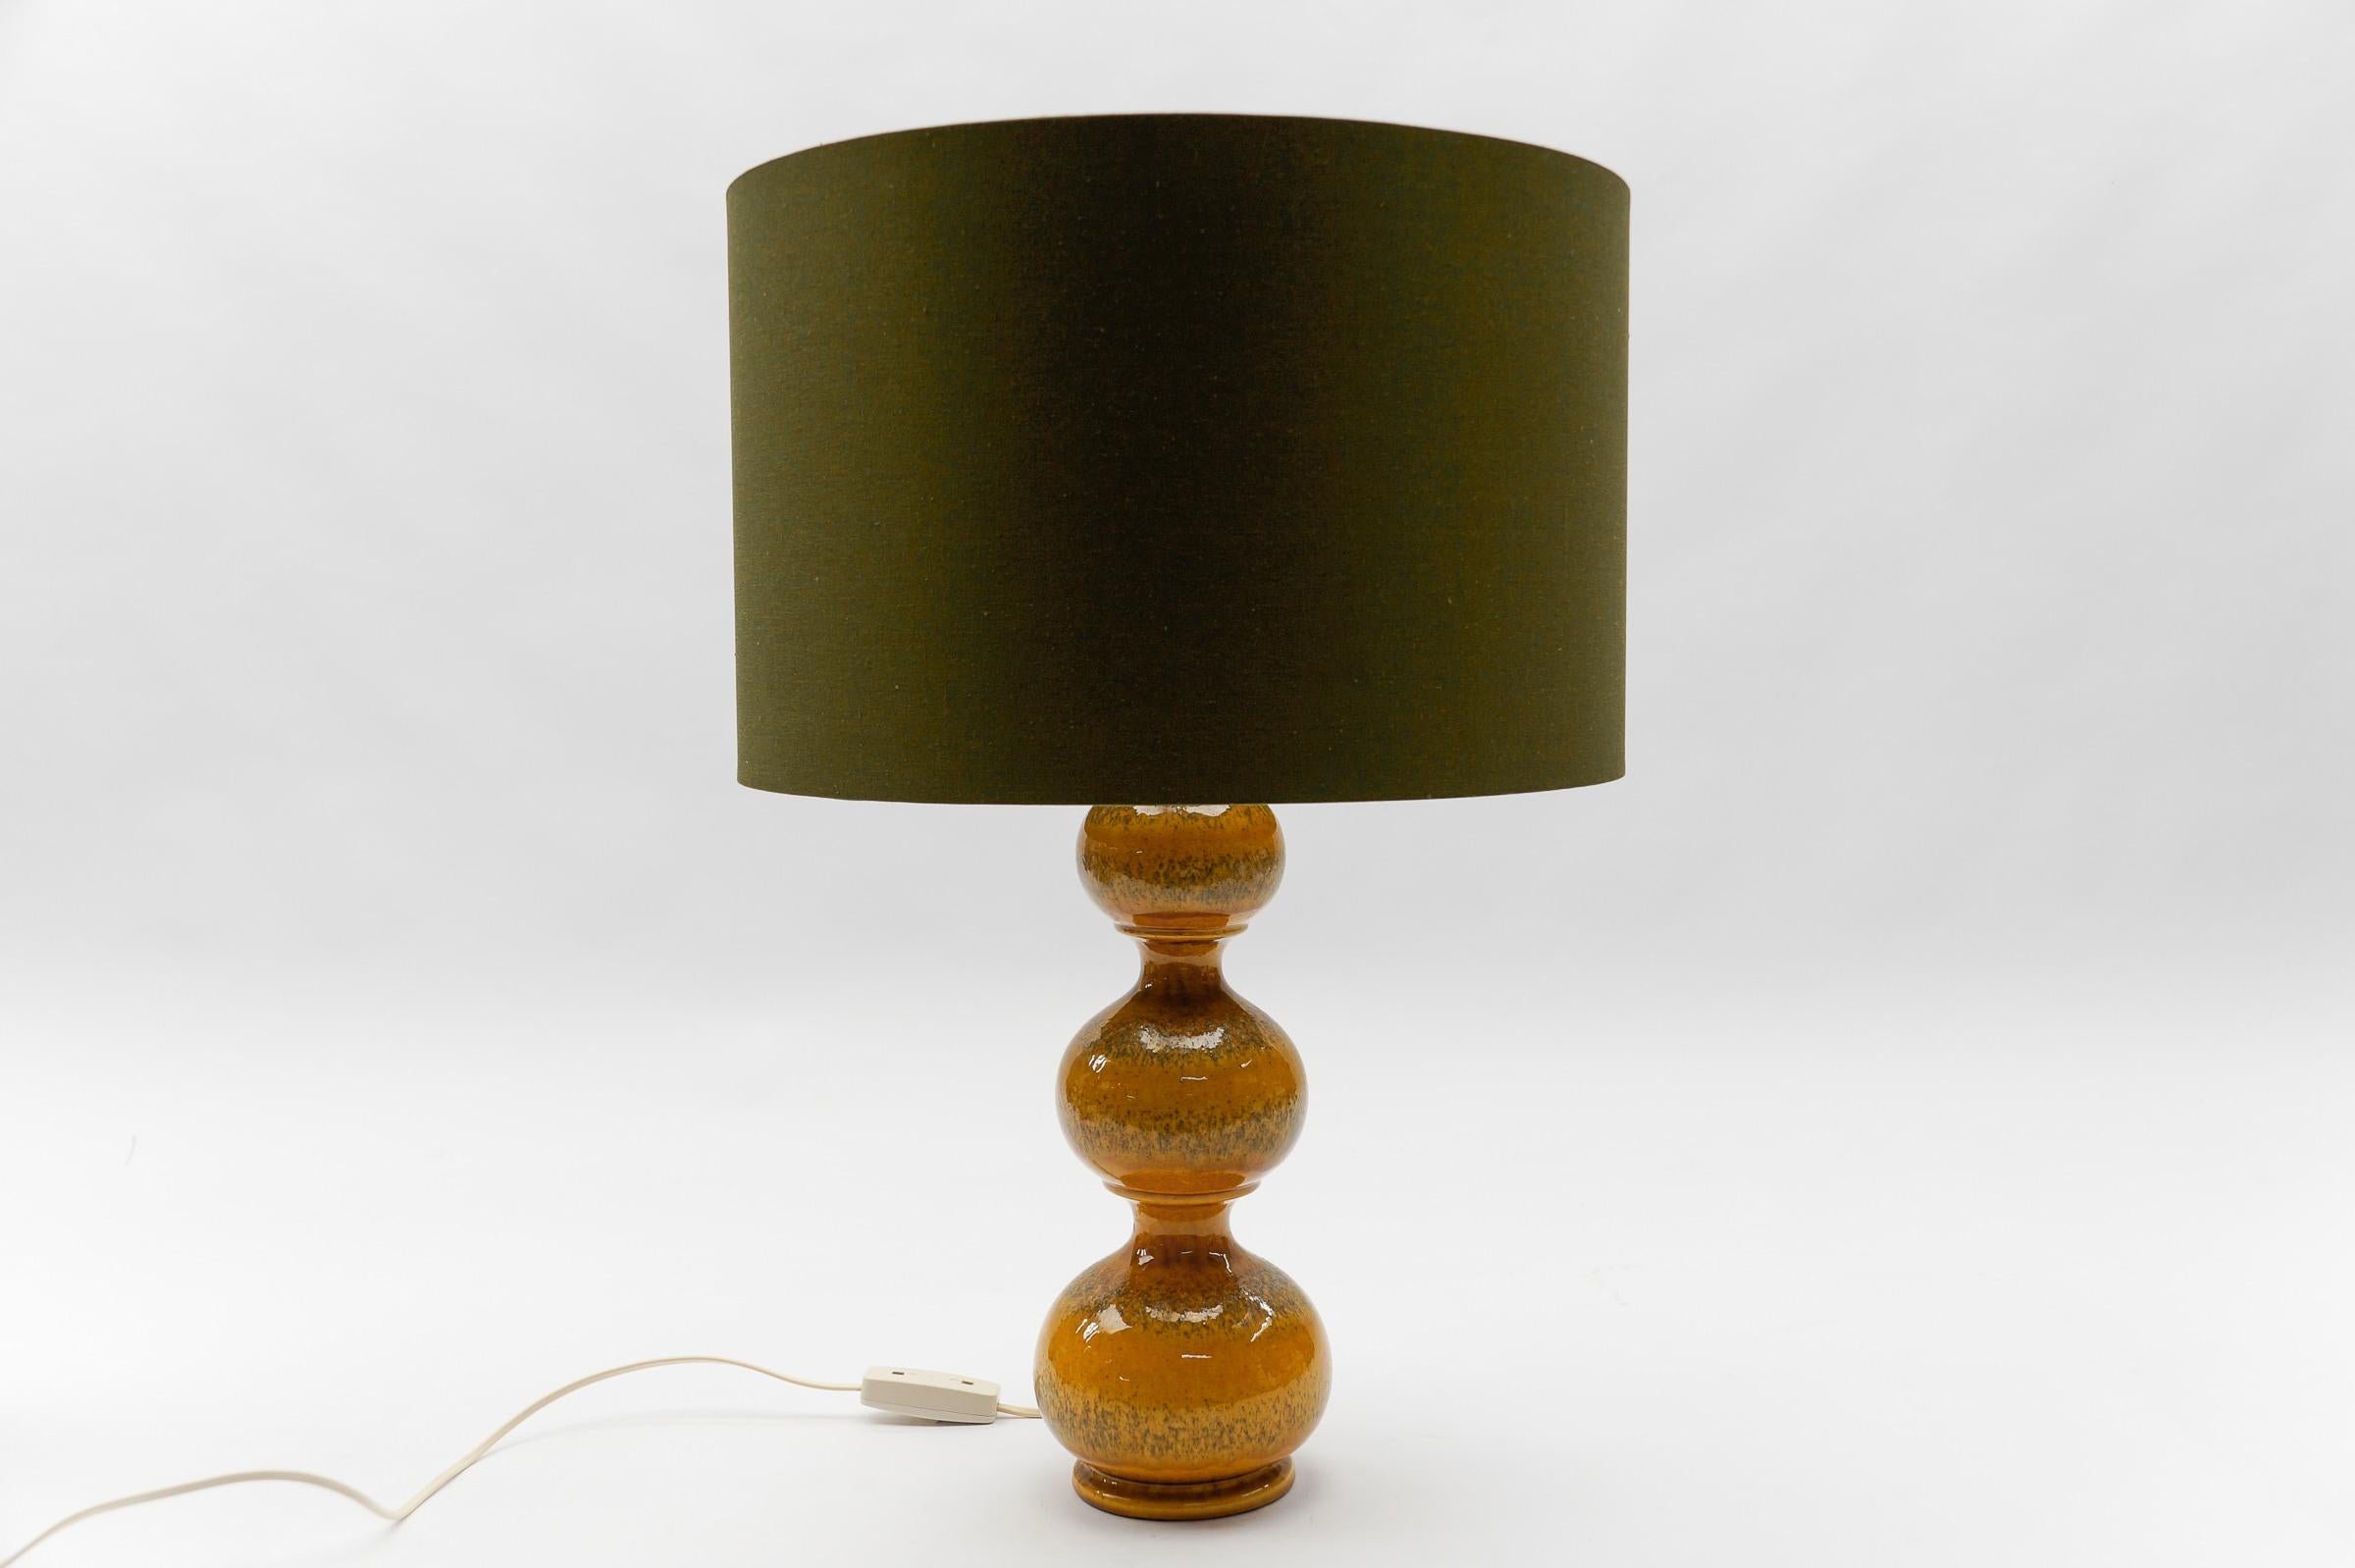 Diese Tischlampe aus Keramik wurde in den 1960er Jahren entworfen. 

Wir haben insgesamt sechs Tischlampenfüße aus der Keramikserie Kaiser Leuchten Bubble aus den 1960er Jahren. 

Drei große orangefarbene, eine etwas kleinere und zwei größere grüne.